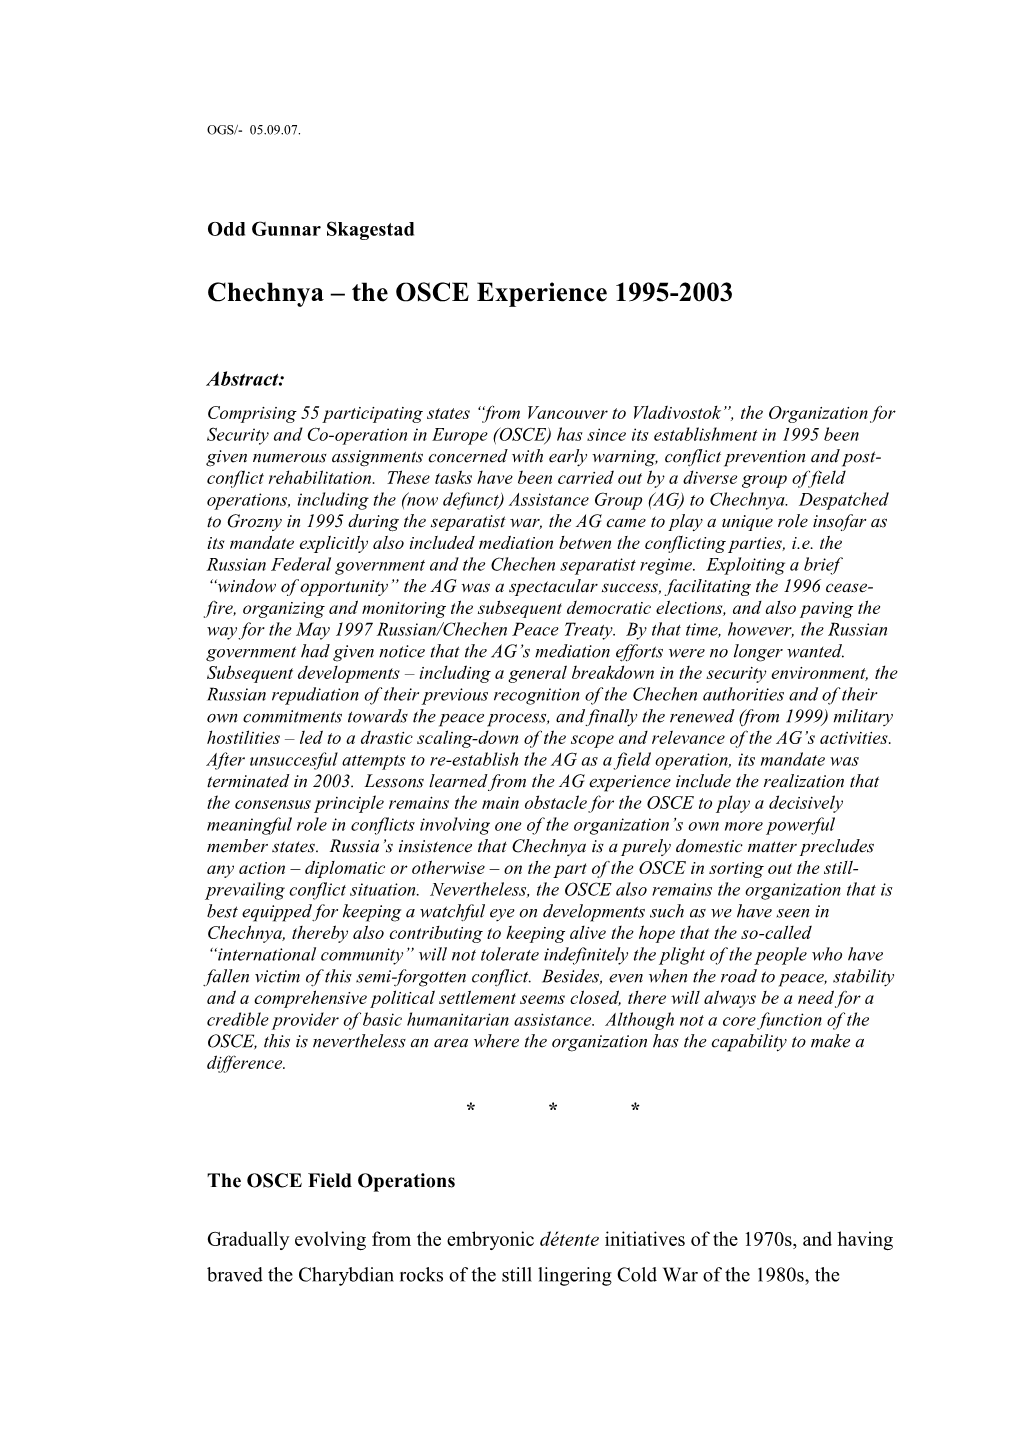 Chechnya – the OSCE Experience 1995-2003